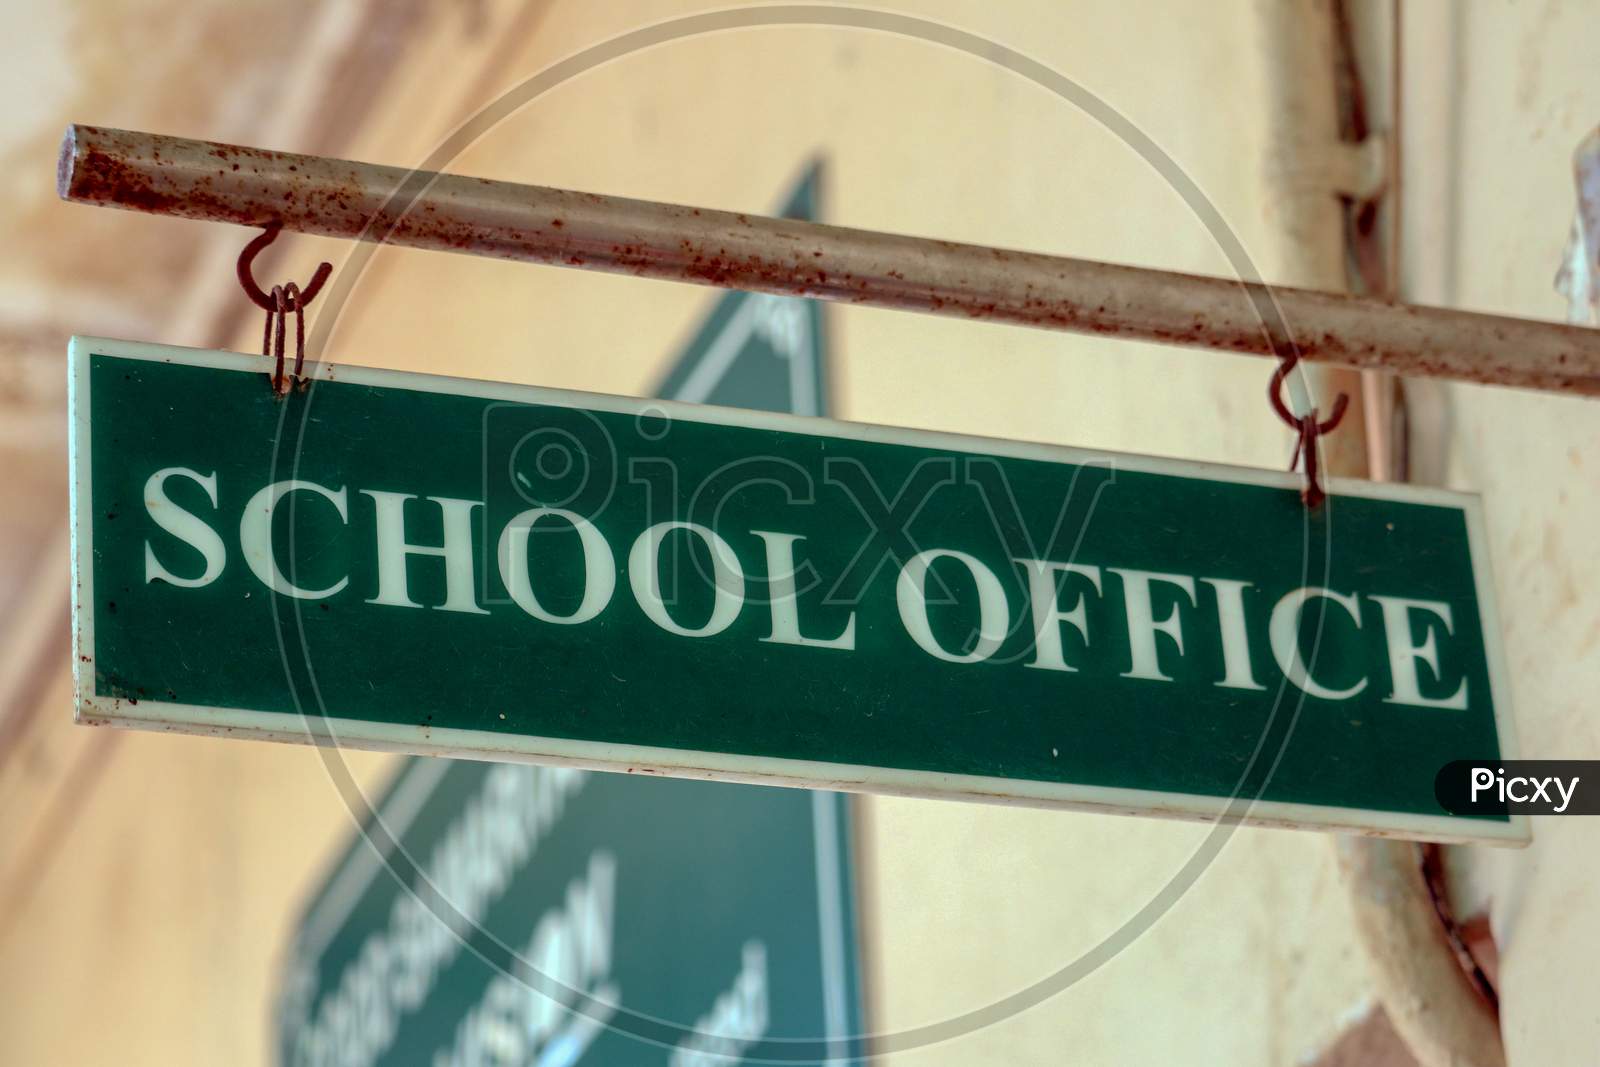 "New  Delhi/India -28,05,2020 : School Office  Borads  Hanging  In School "